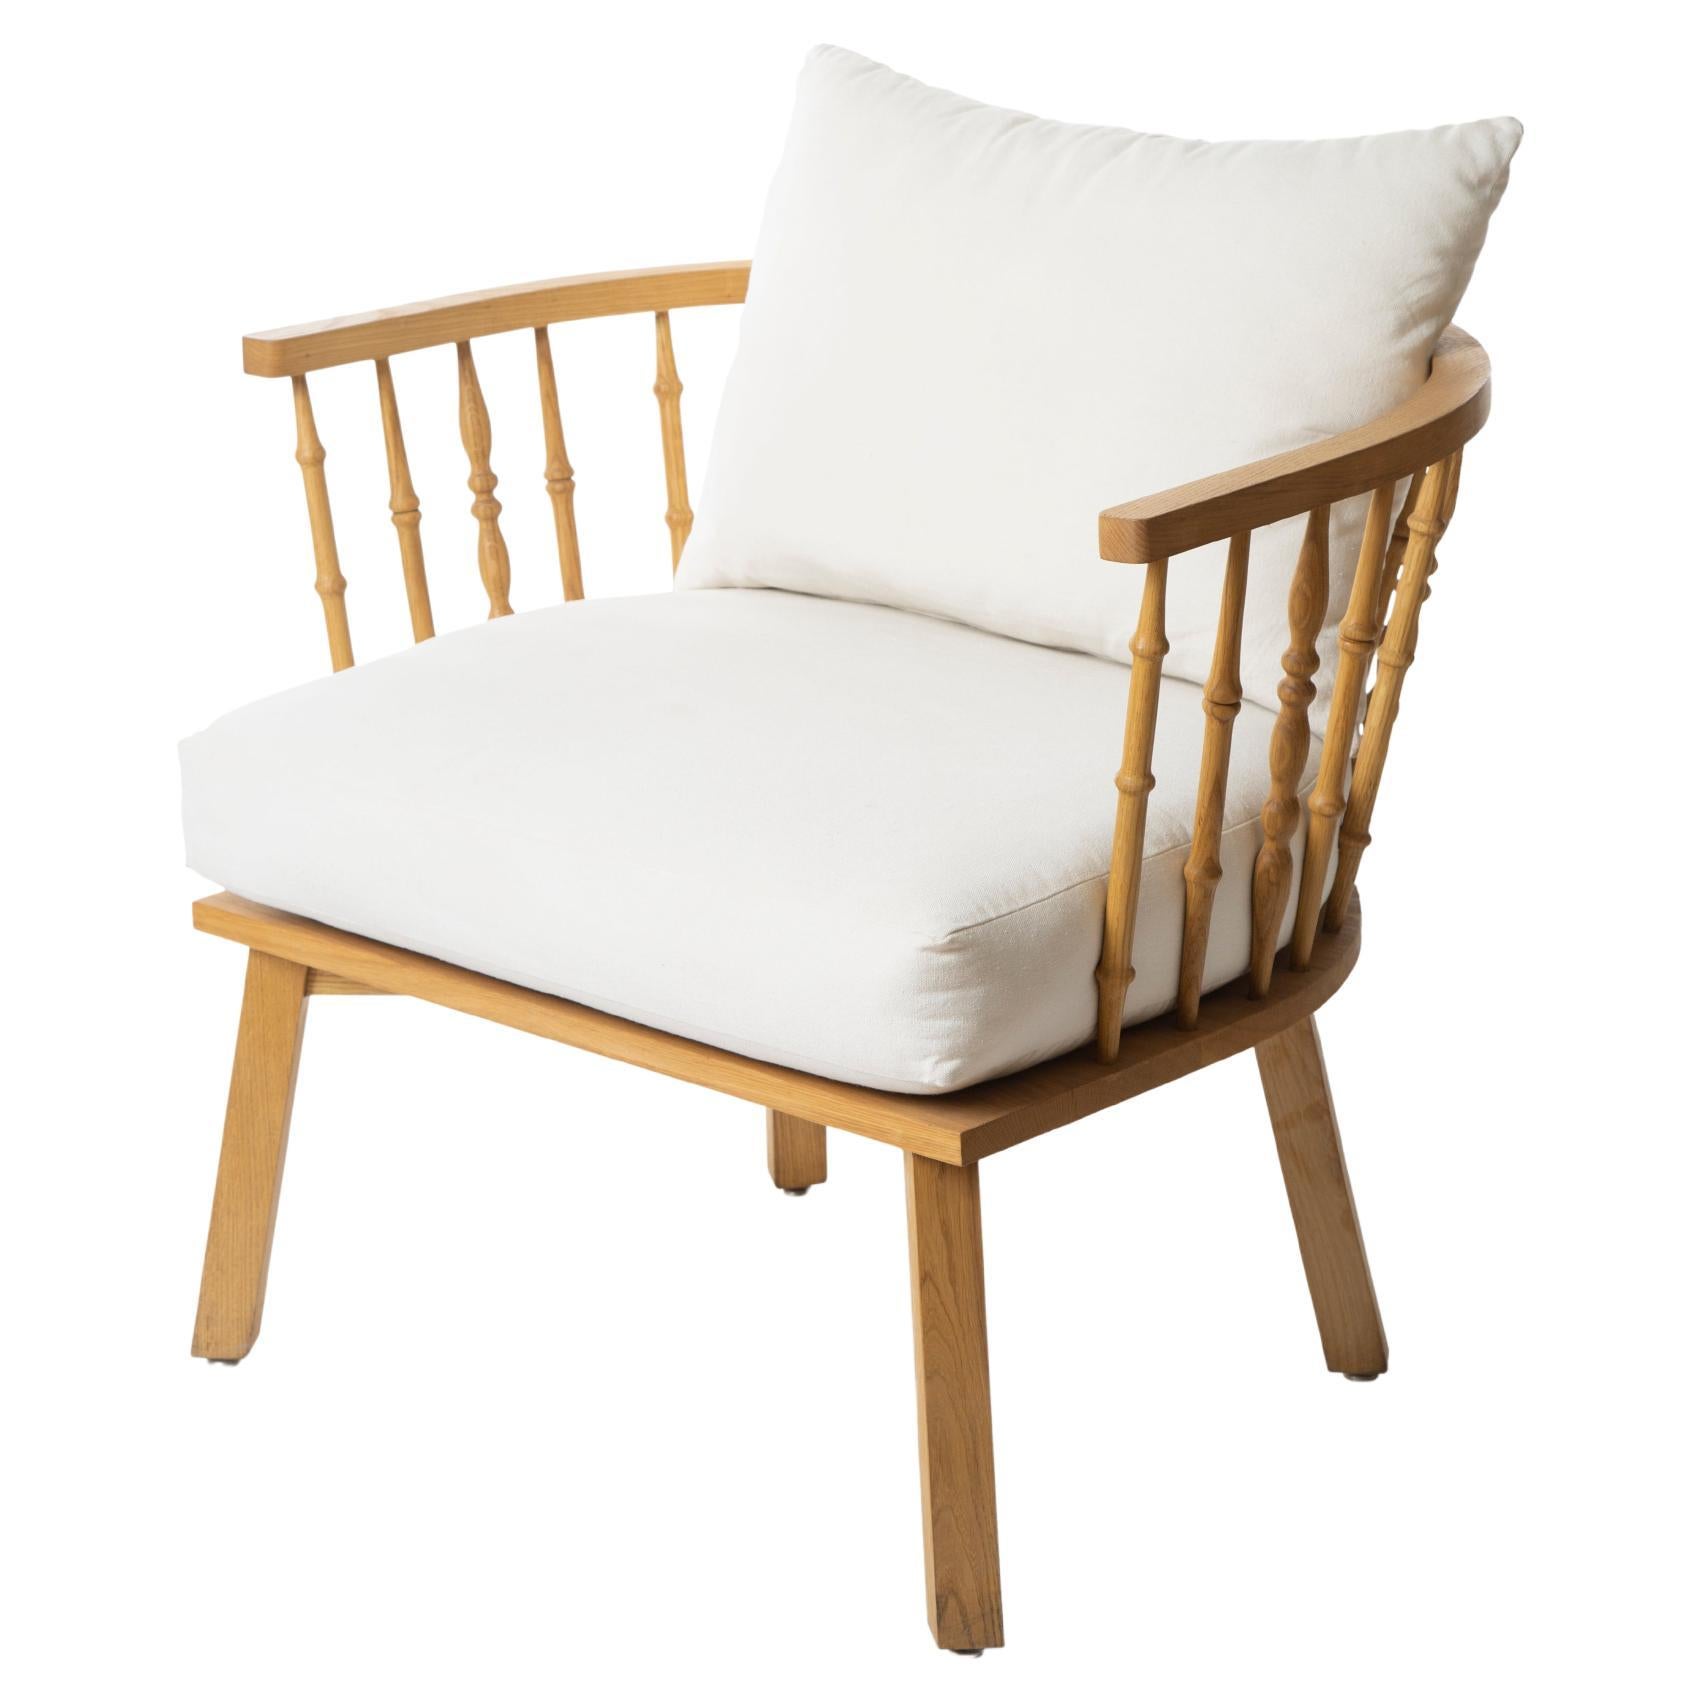 Outdoor-Sessel aus geöltem Eichenholz mit geschnitzter Rückenlehne aus Arabesken-Stil